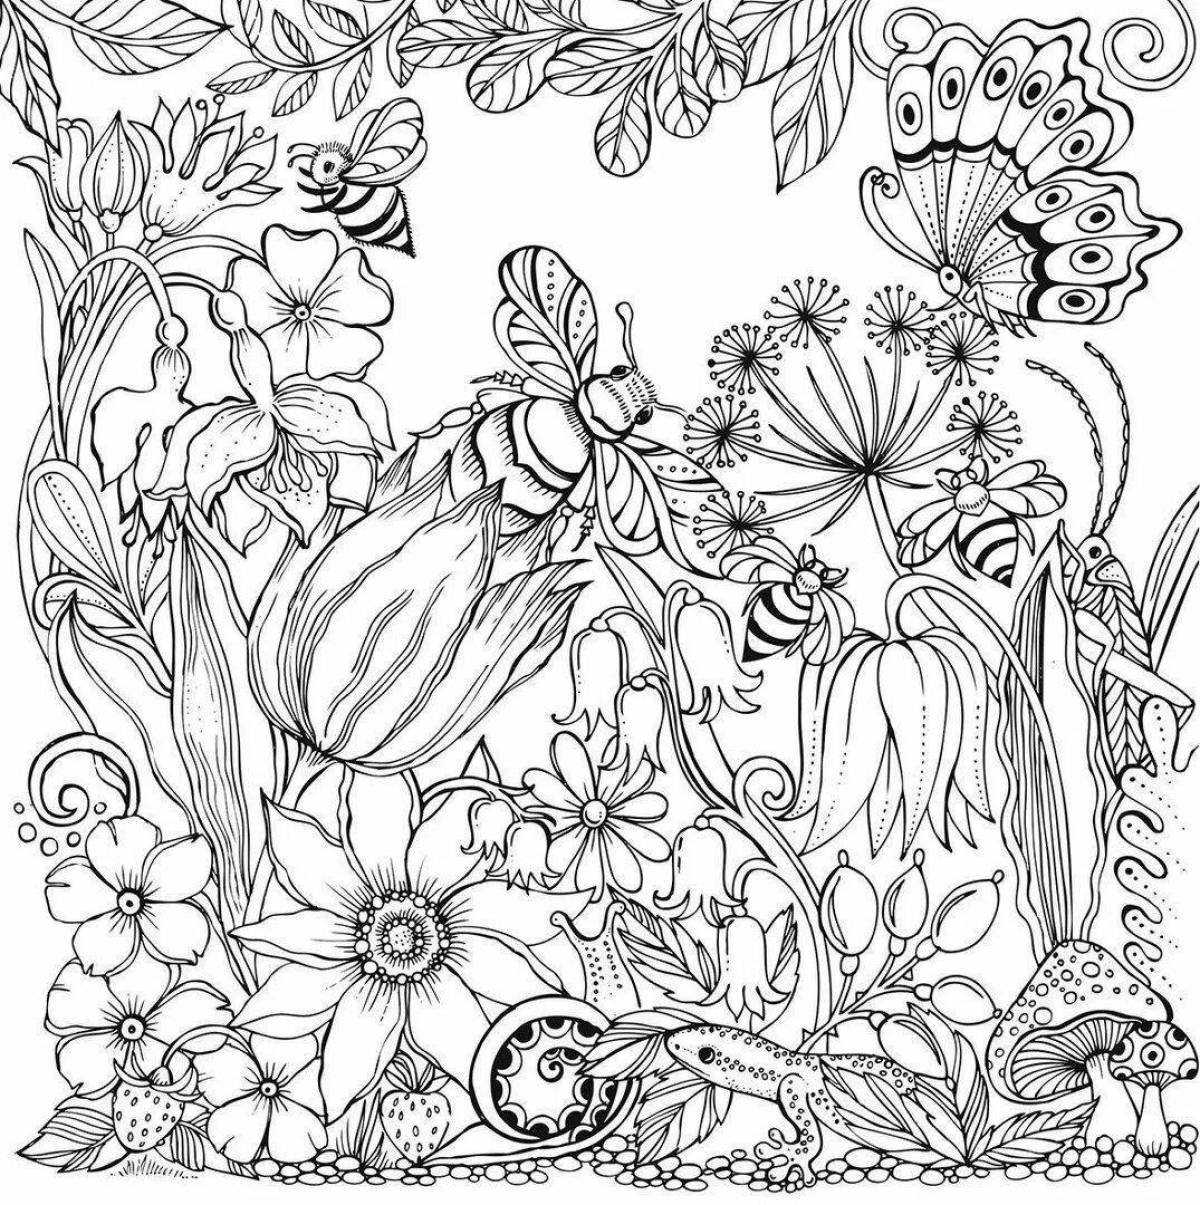 Exquisite flower garden coloring book